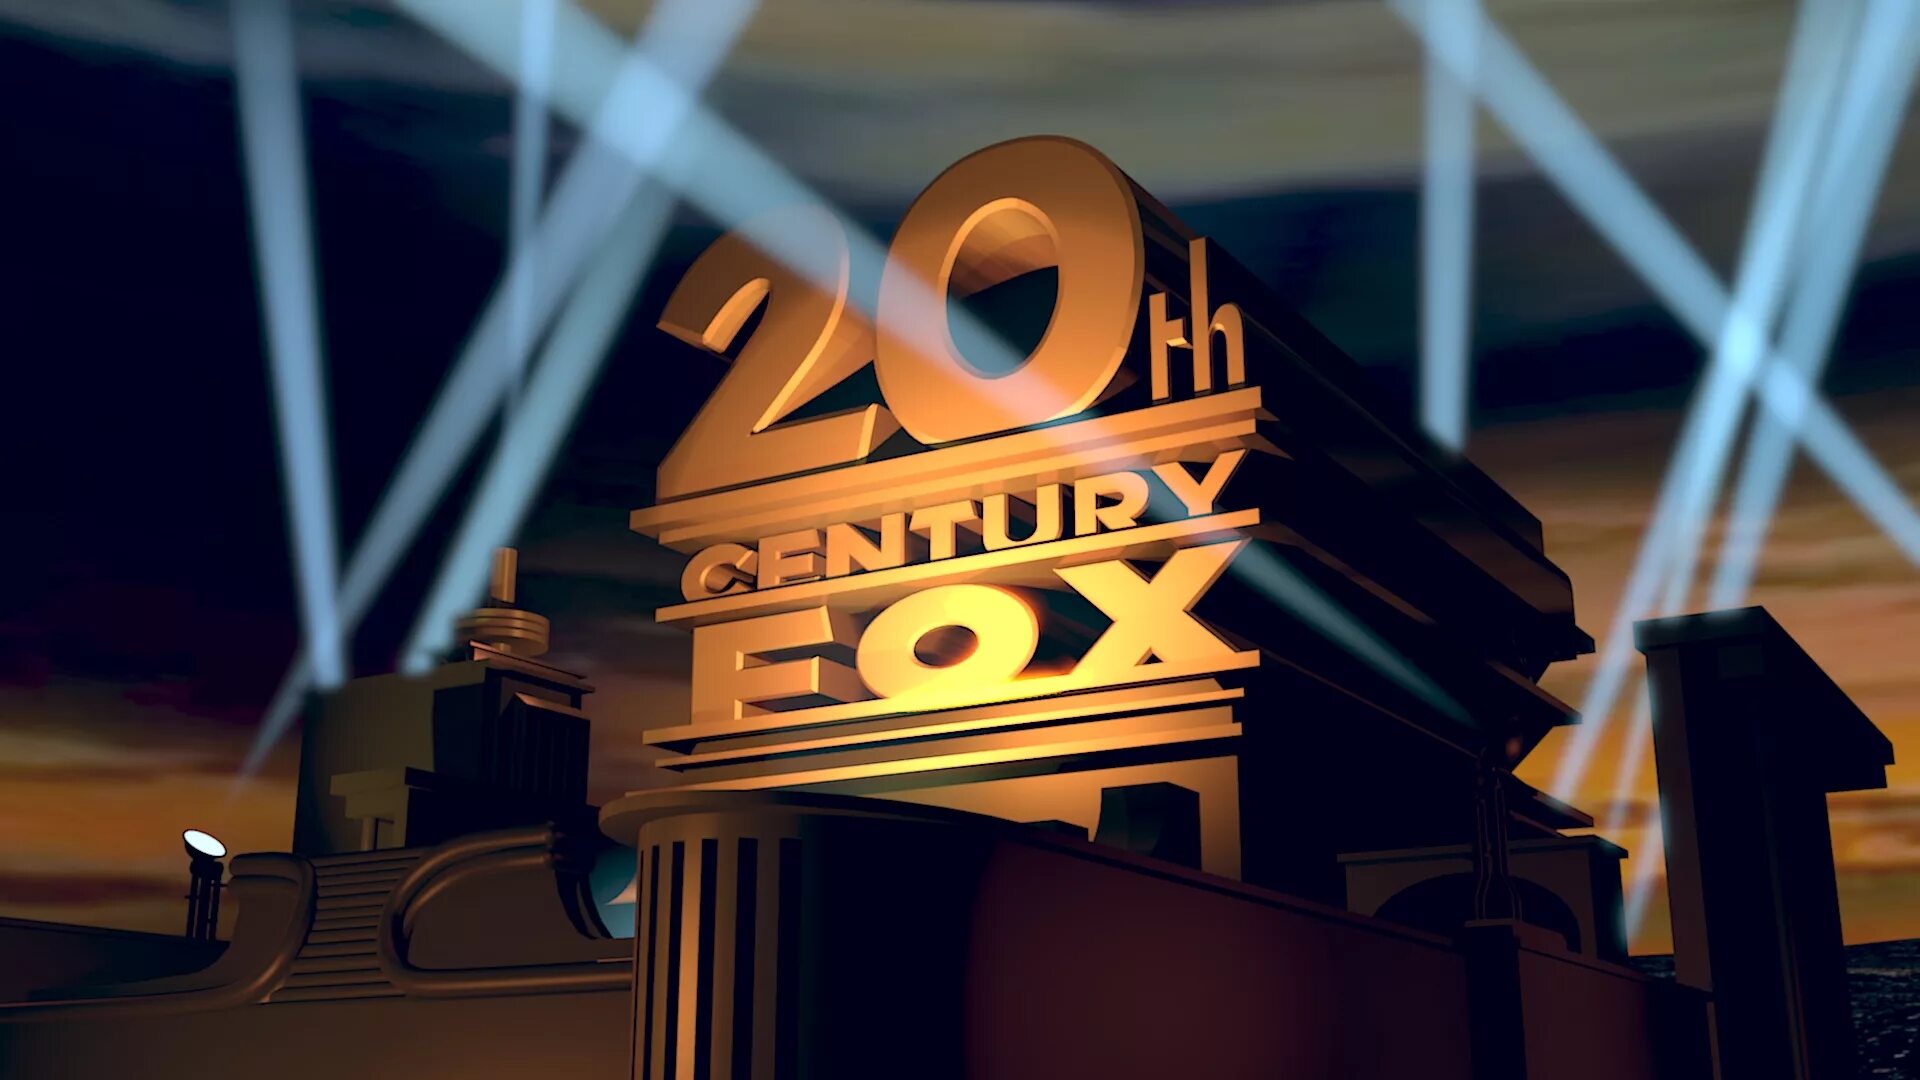 20 Век Центури Фокс. 20 Век Фокс Пикчерз. Кинокомпания 20 век Фокс представляет. Студия 20th Century Fox. Заставка fox